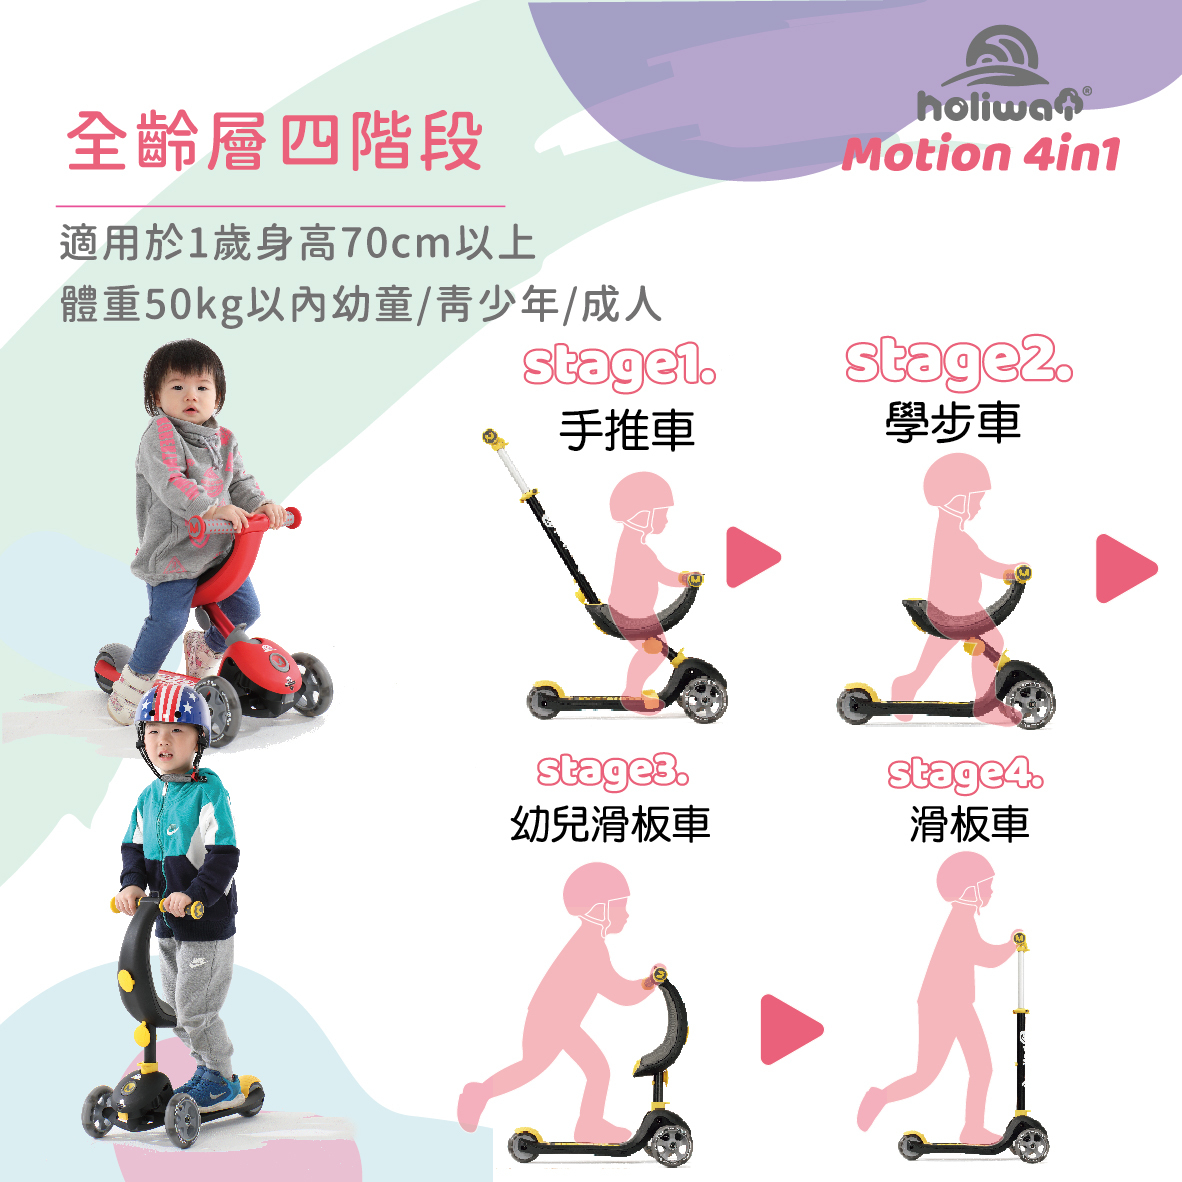 哈樂維 Motion 4in1 全功能學步滑板車